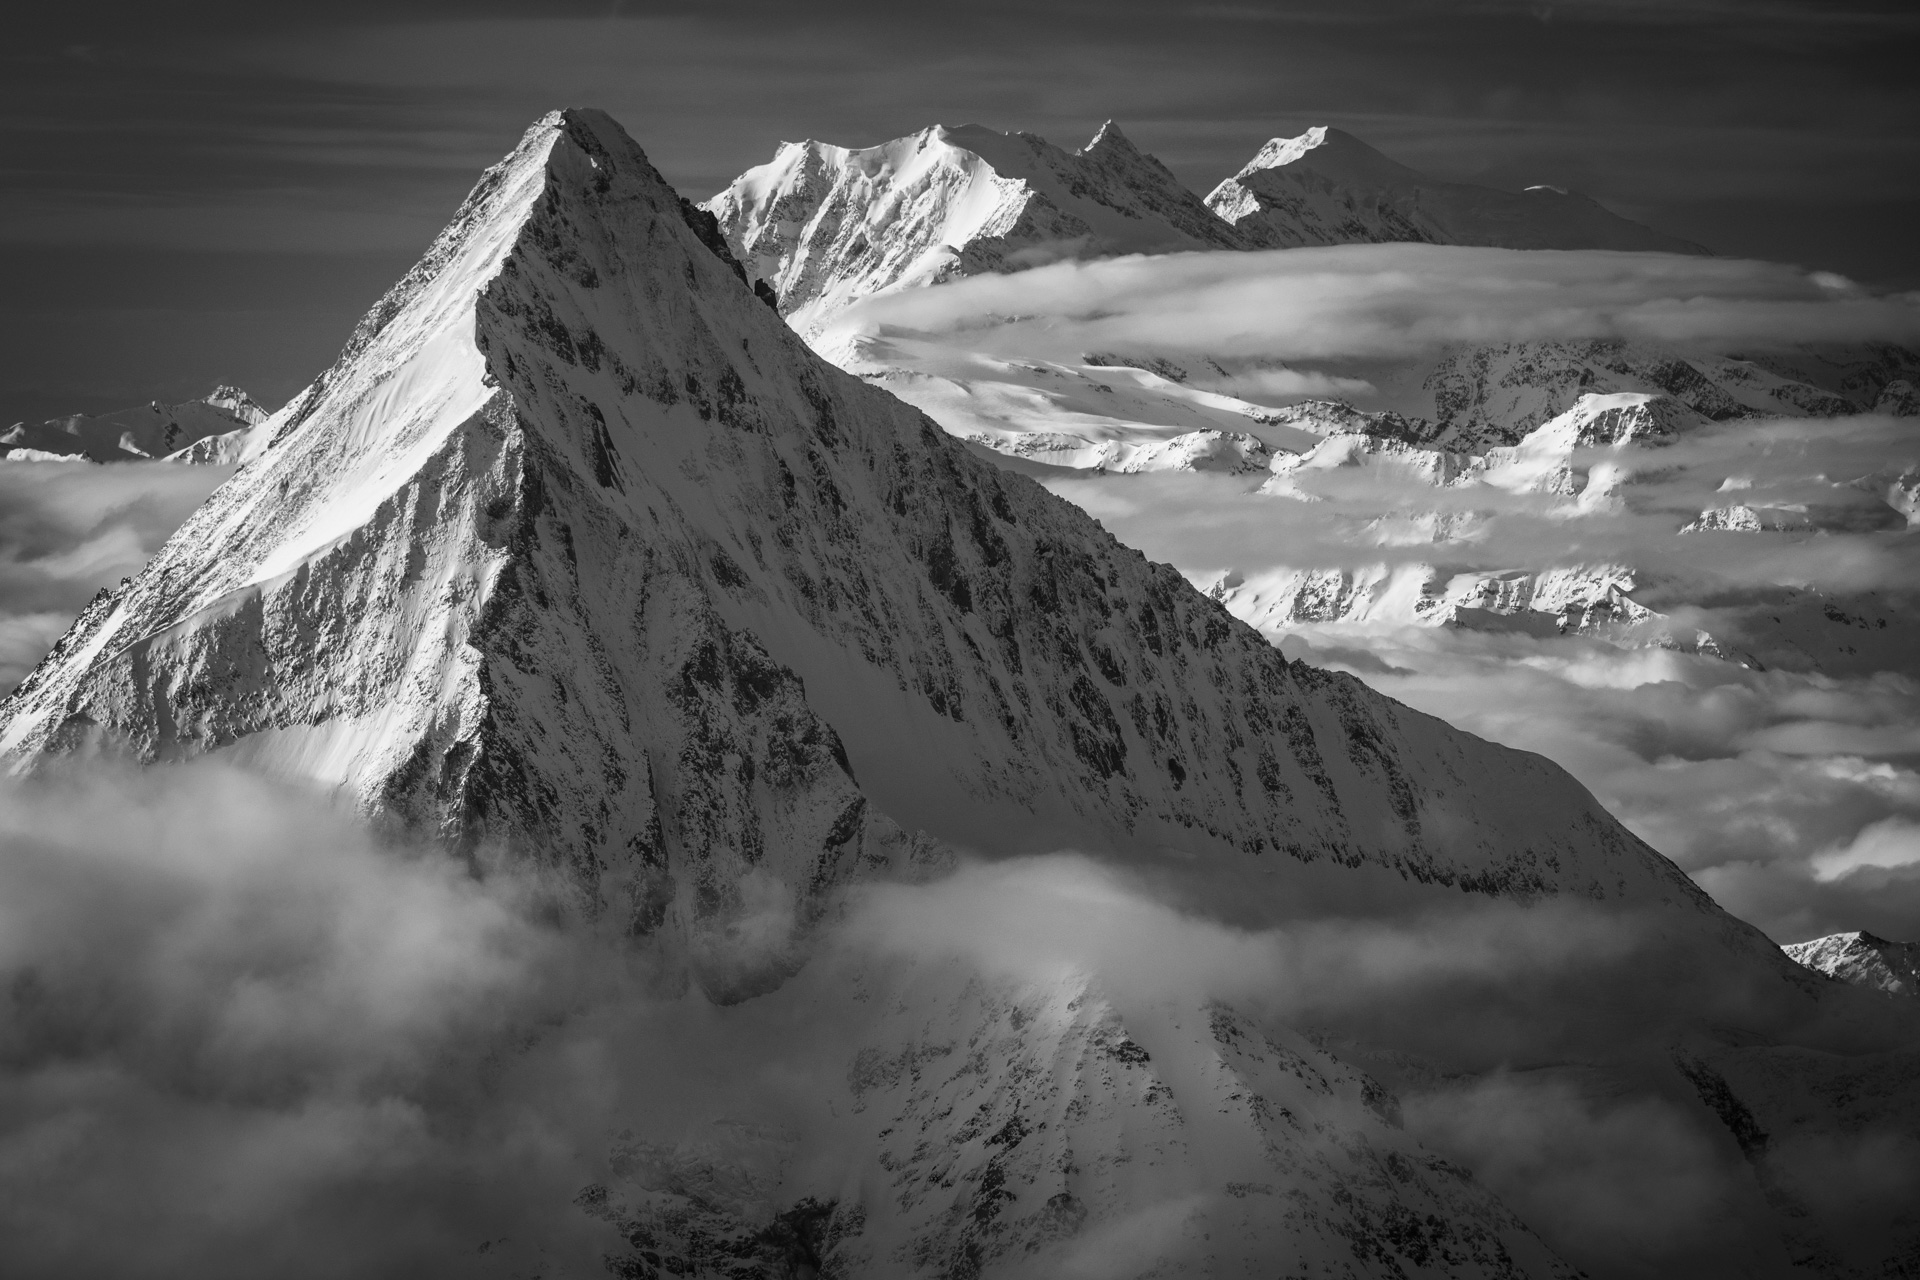 Bietschhorn - Schwarz-Weiß-Foto des Lötschental-Gipfels und der Berge von Saas Fee und Crans Montana in den Schweizer Alpen